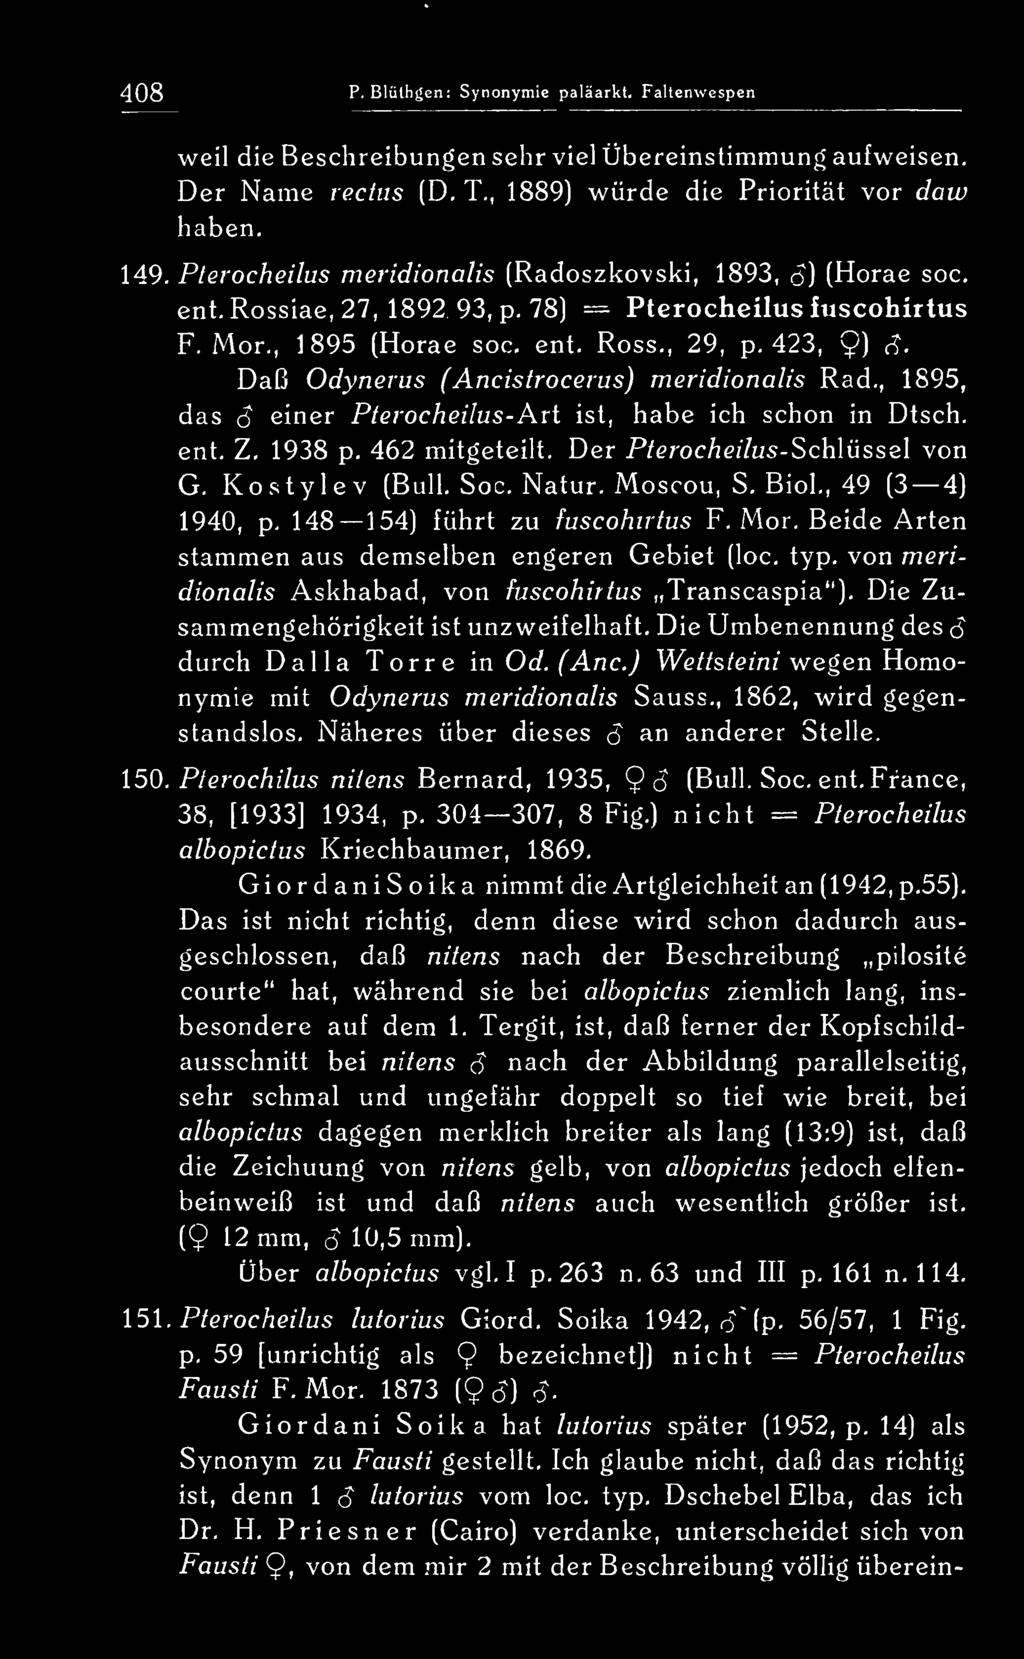 . Daß Odynerus (Ancistrocerus) meridionalis Rad,, 1895, das S einer Pterocheilus- Ari ist, habe ich schon in Dtsch, ent, Z, 1938 p, 462 mitgeteilt.